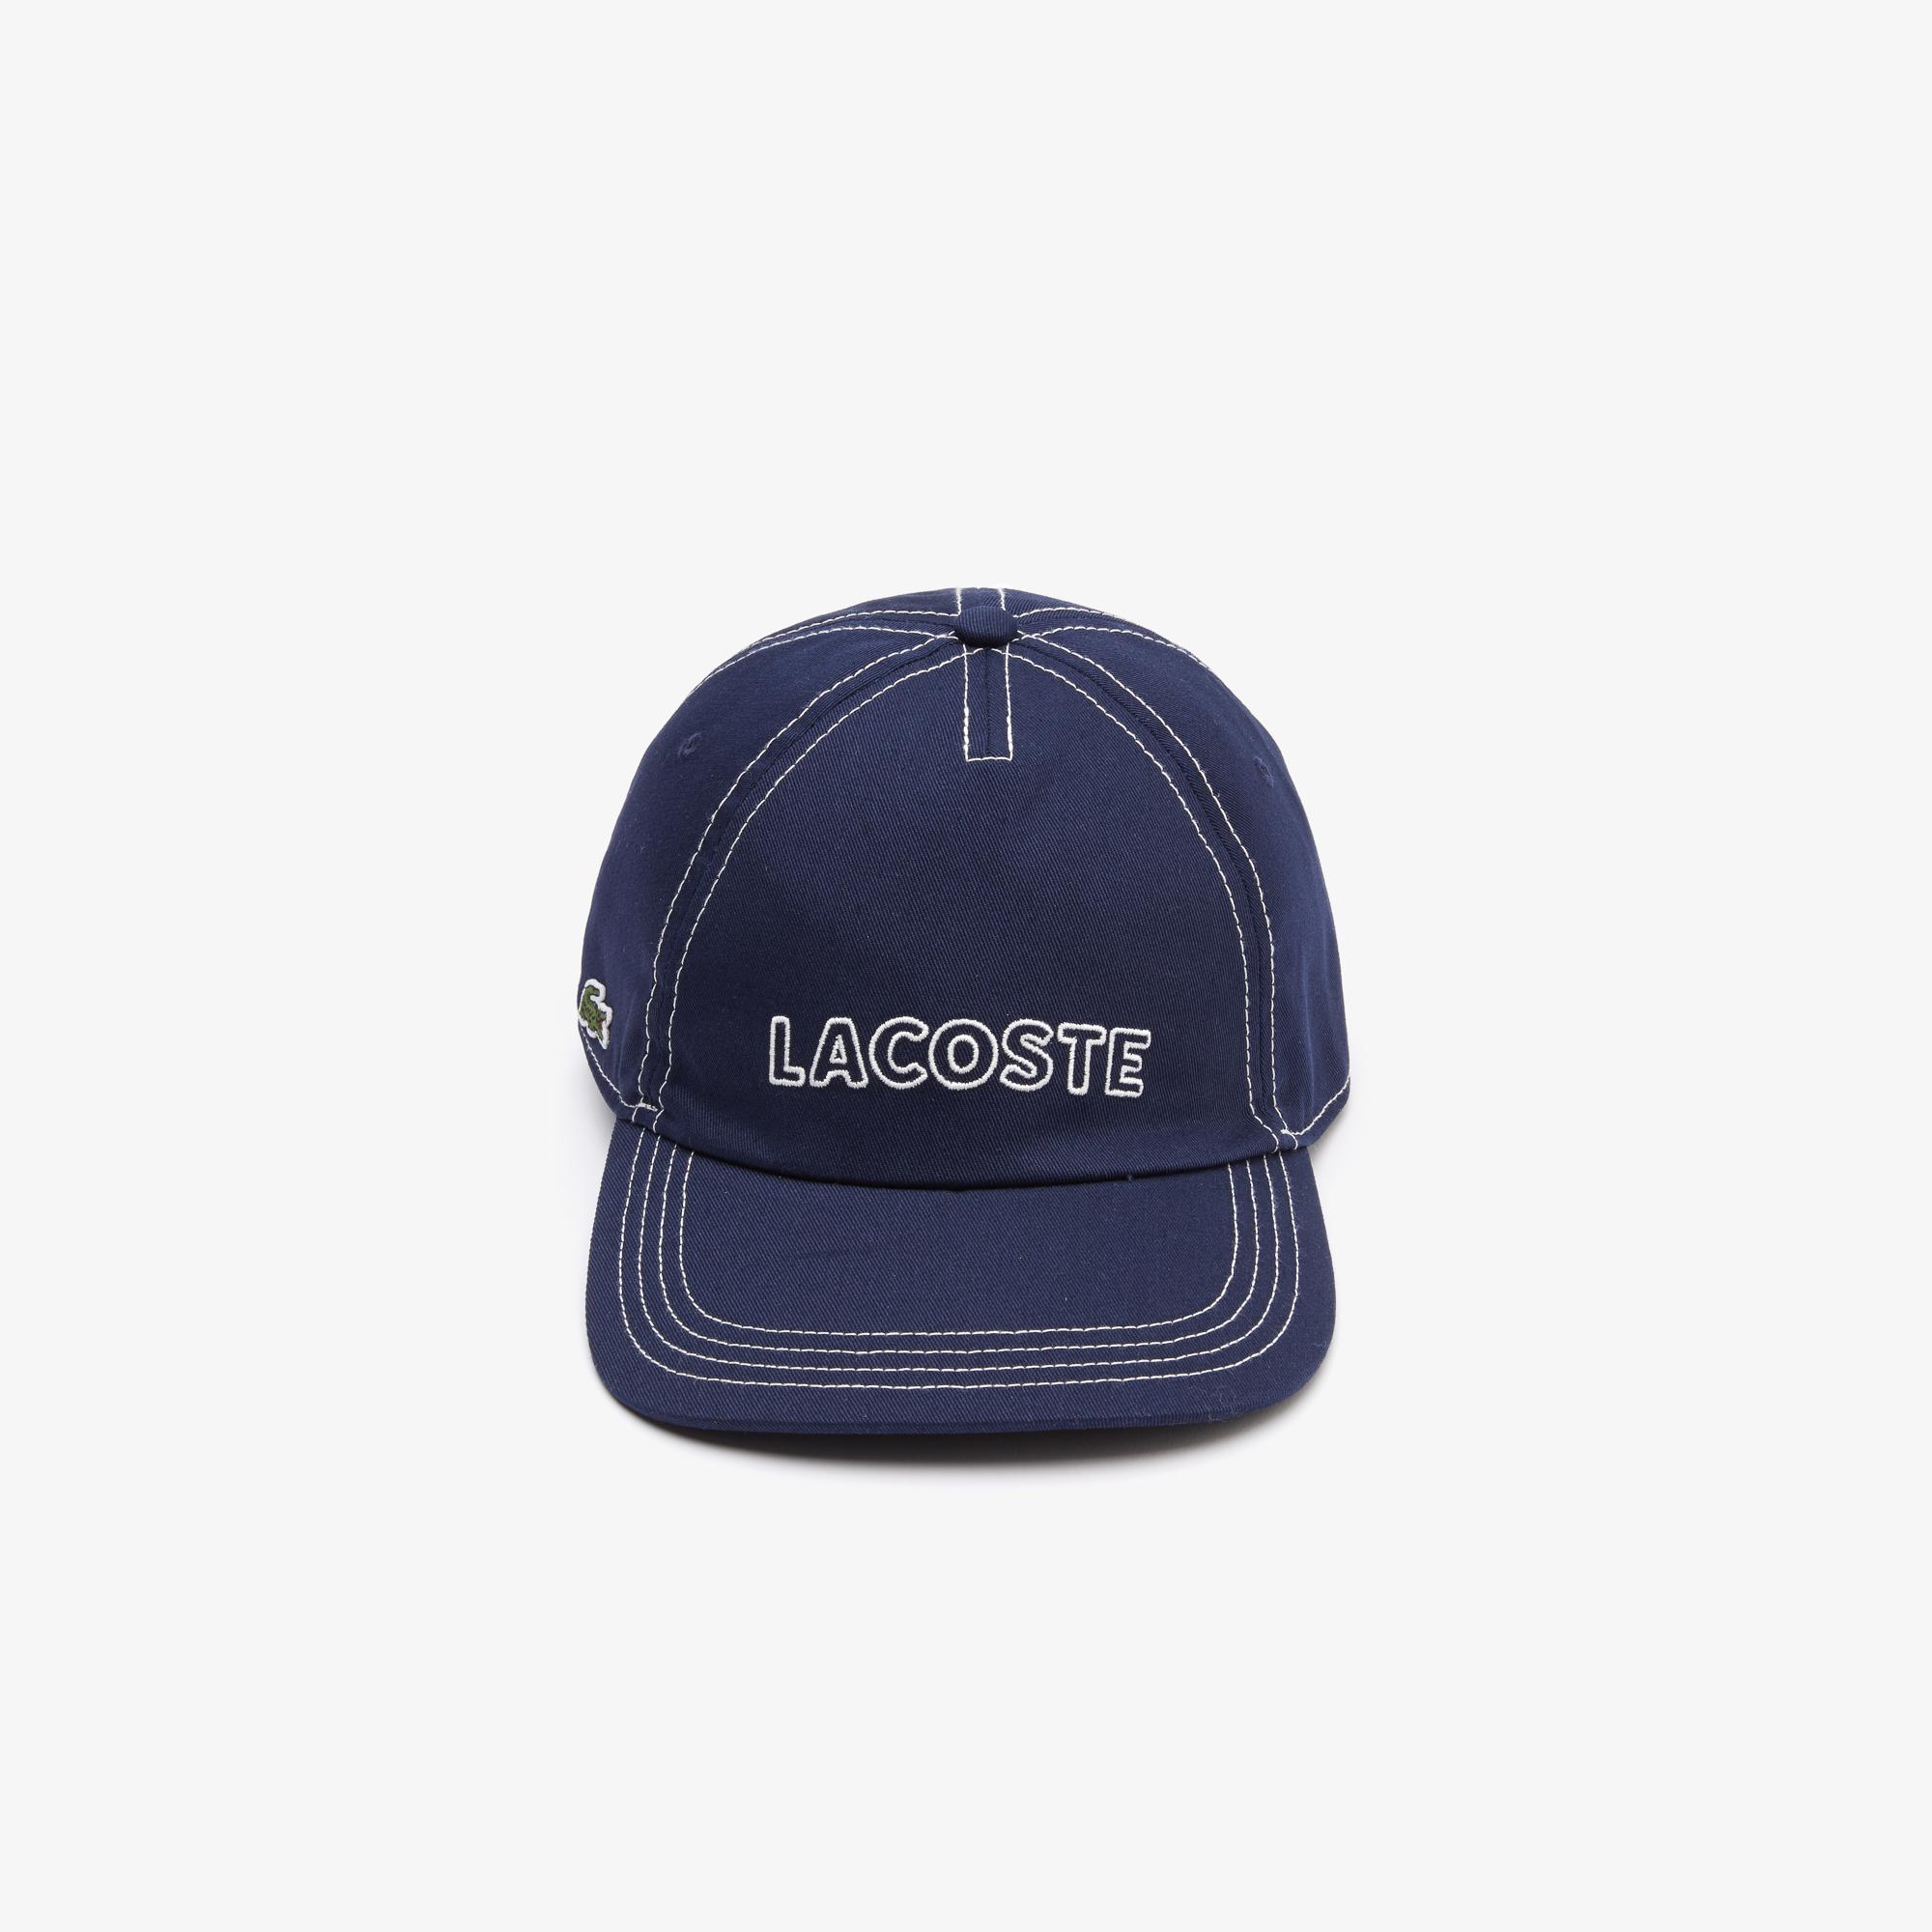 Lacoste Erkek Baskılı Lacivert Şapka. 4